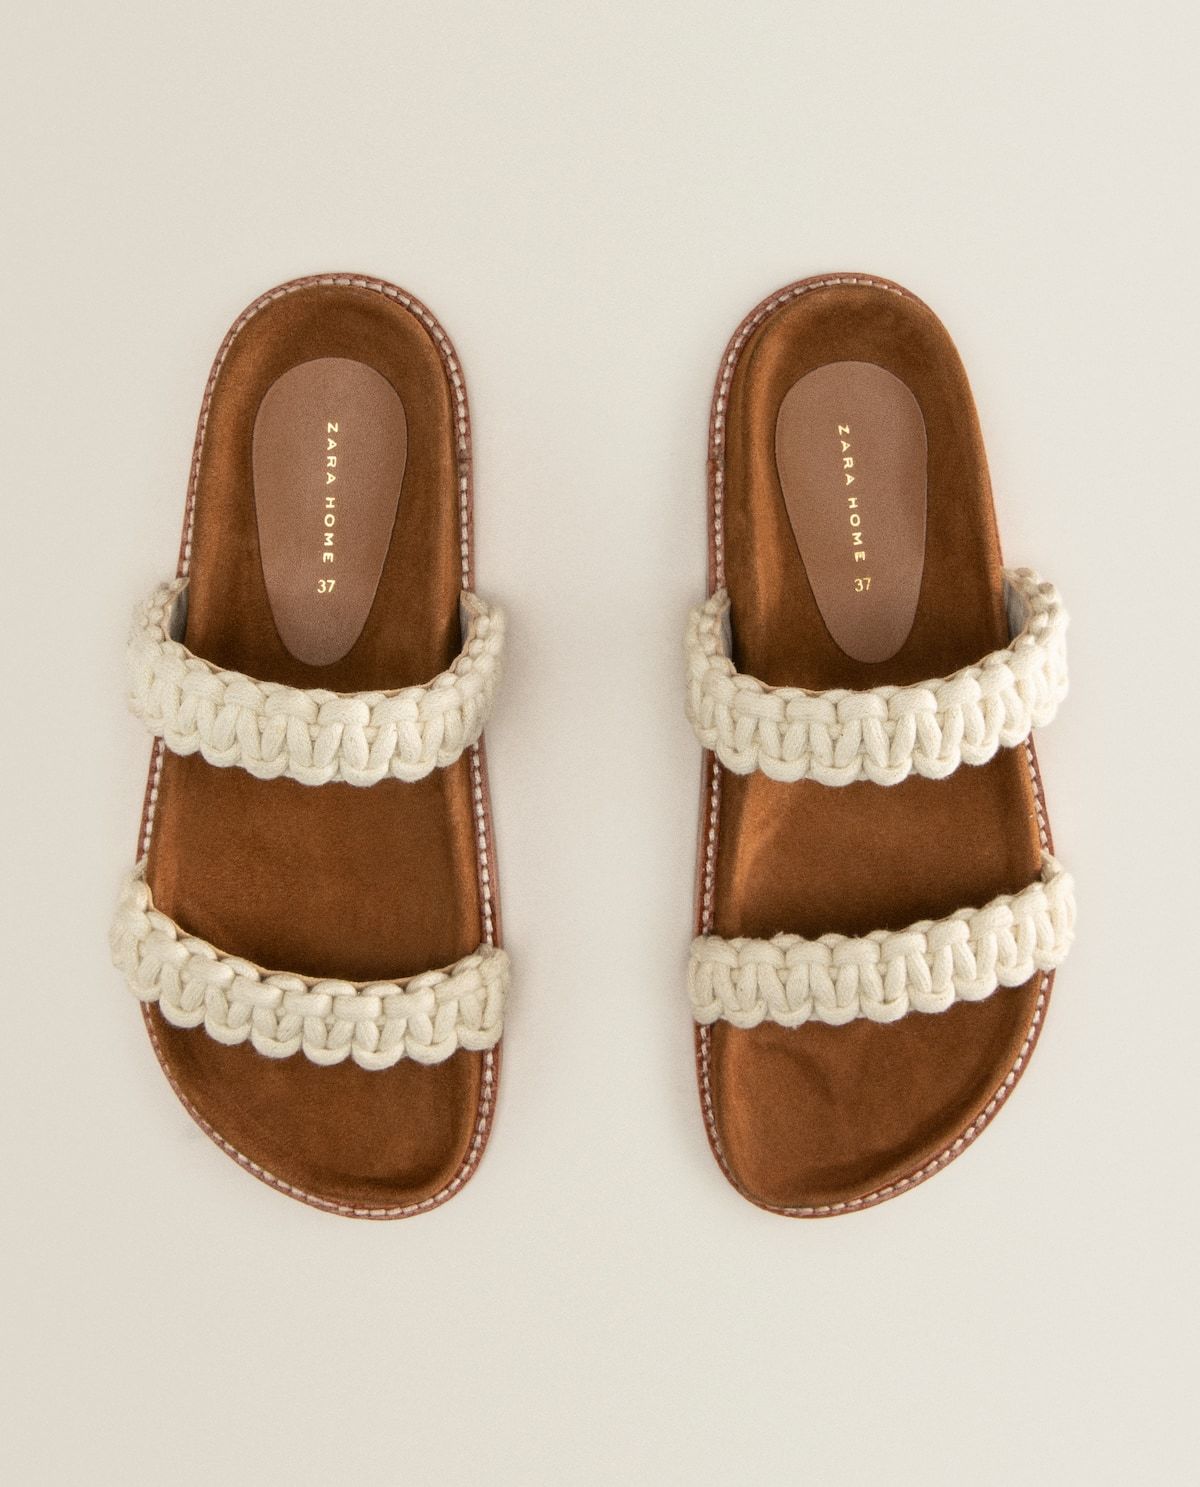 Sandalia de doble tira de crochet en color natural con suela en contraste. Zara Home (35,99 euros).